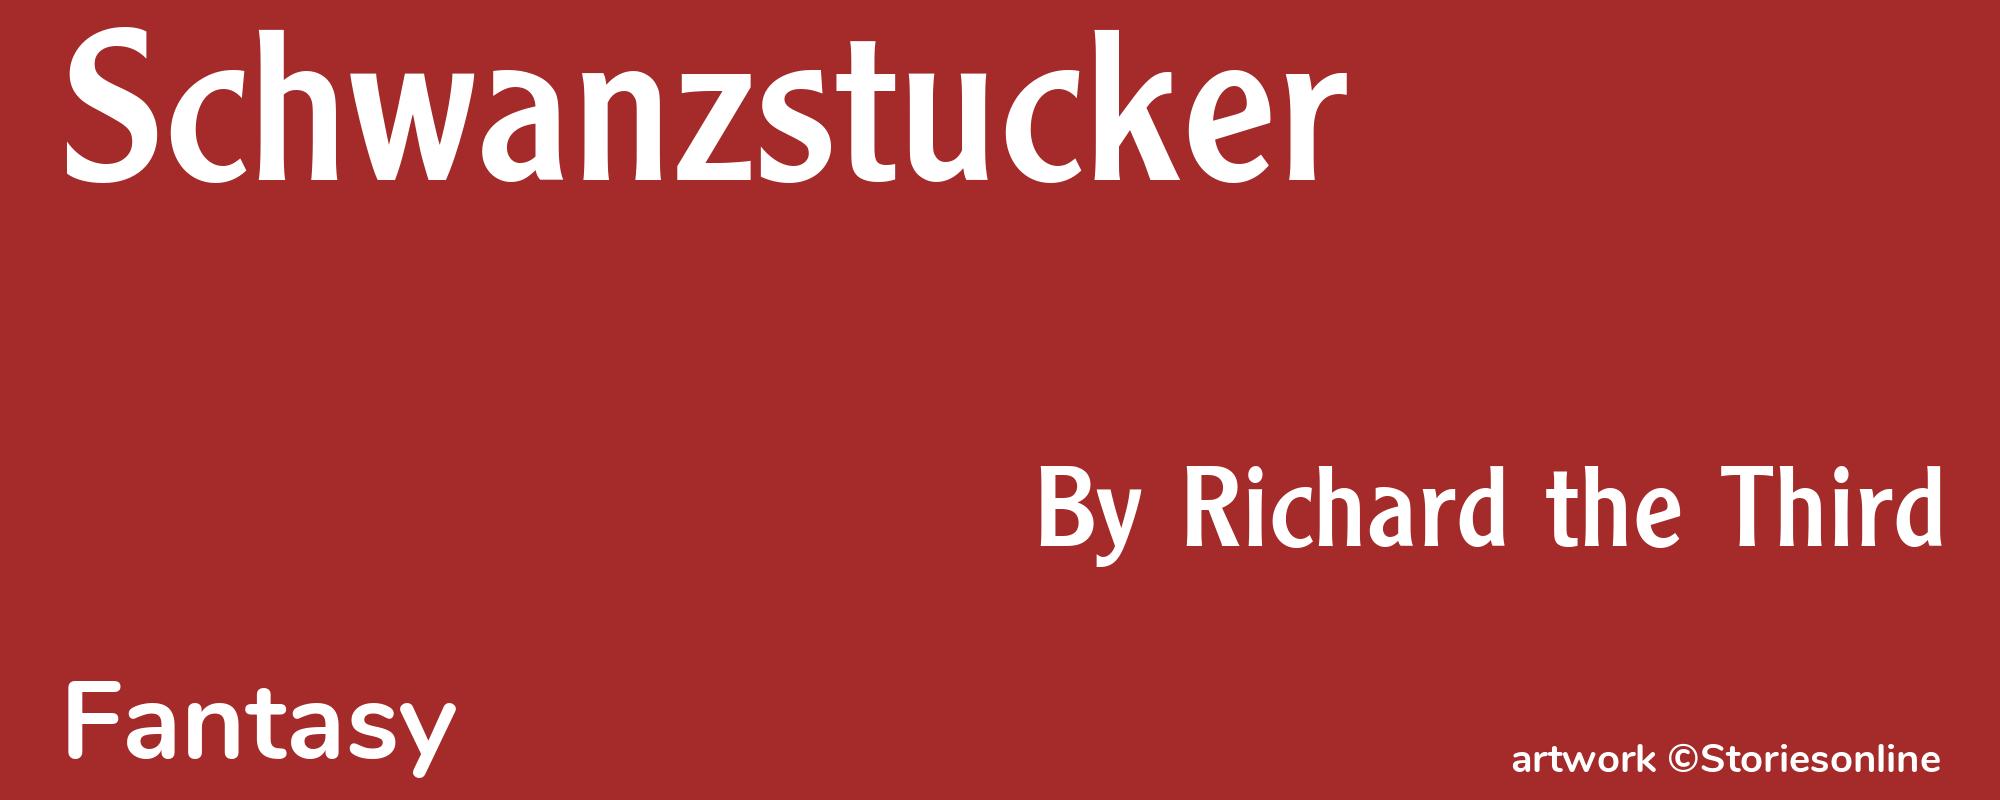 Schwanzstucker - Cover